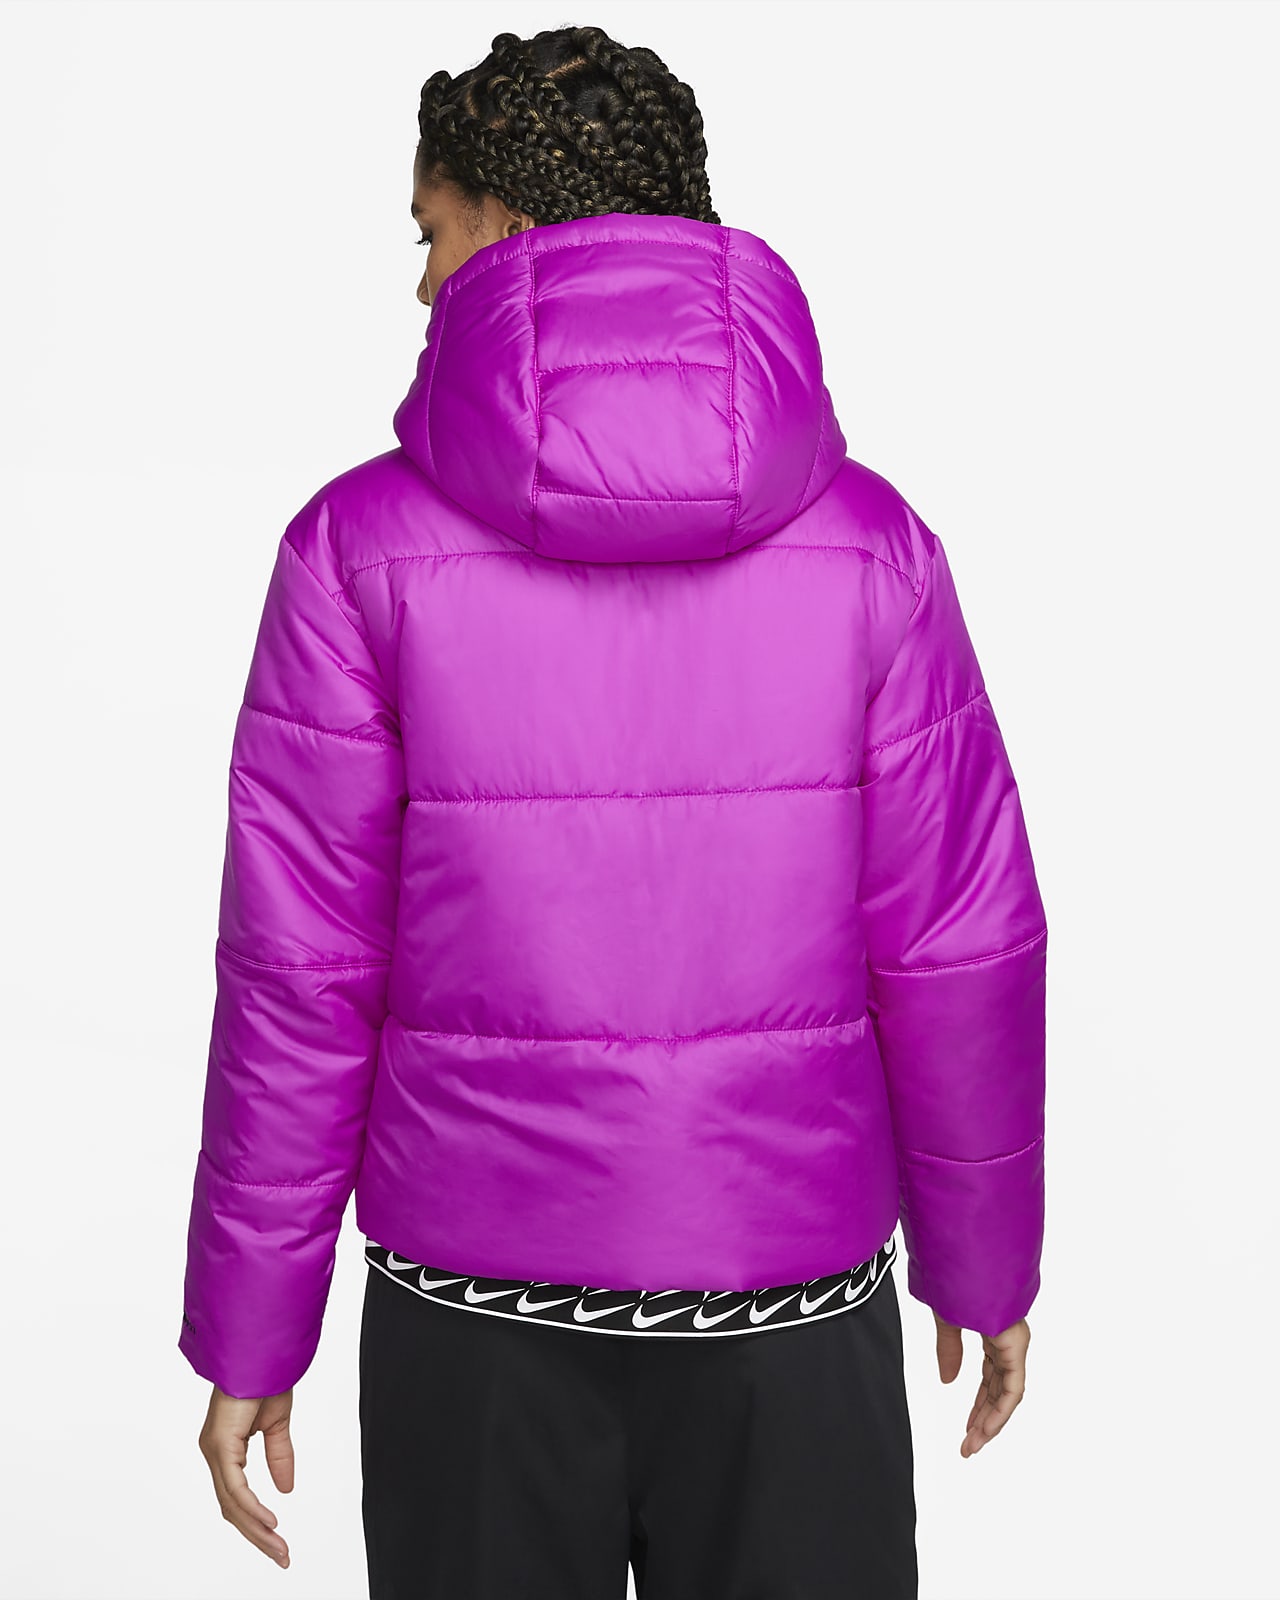 Jacket Nike Sportswear Therma-FIT Repel Women s Hooded Parka 